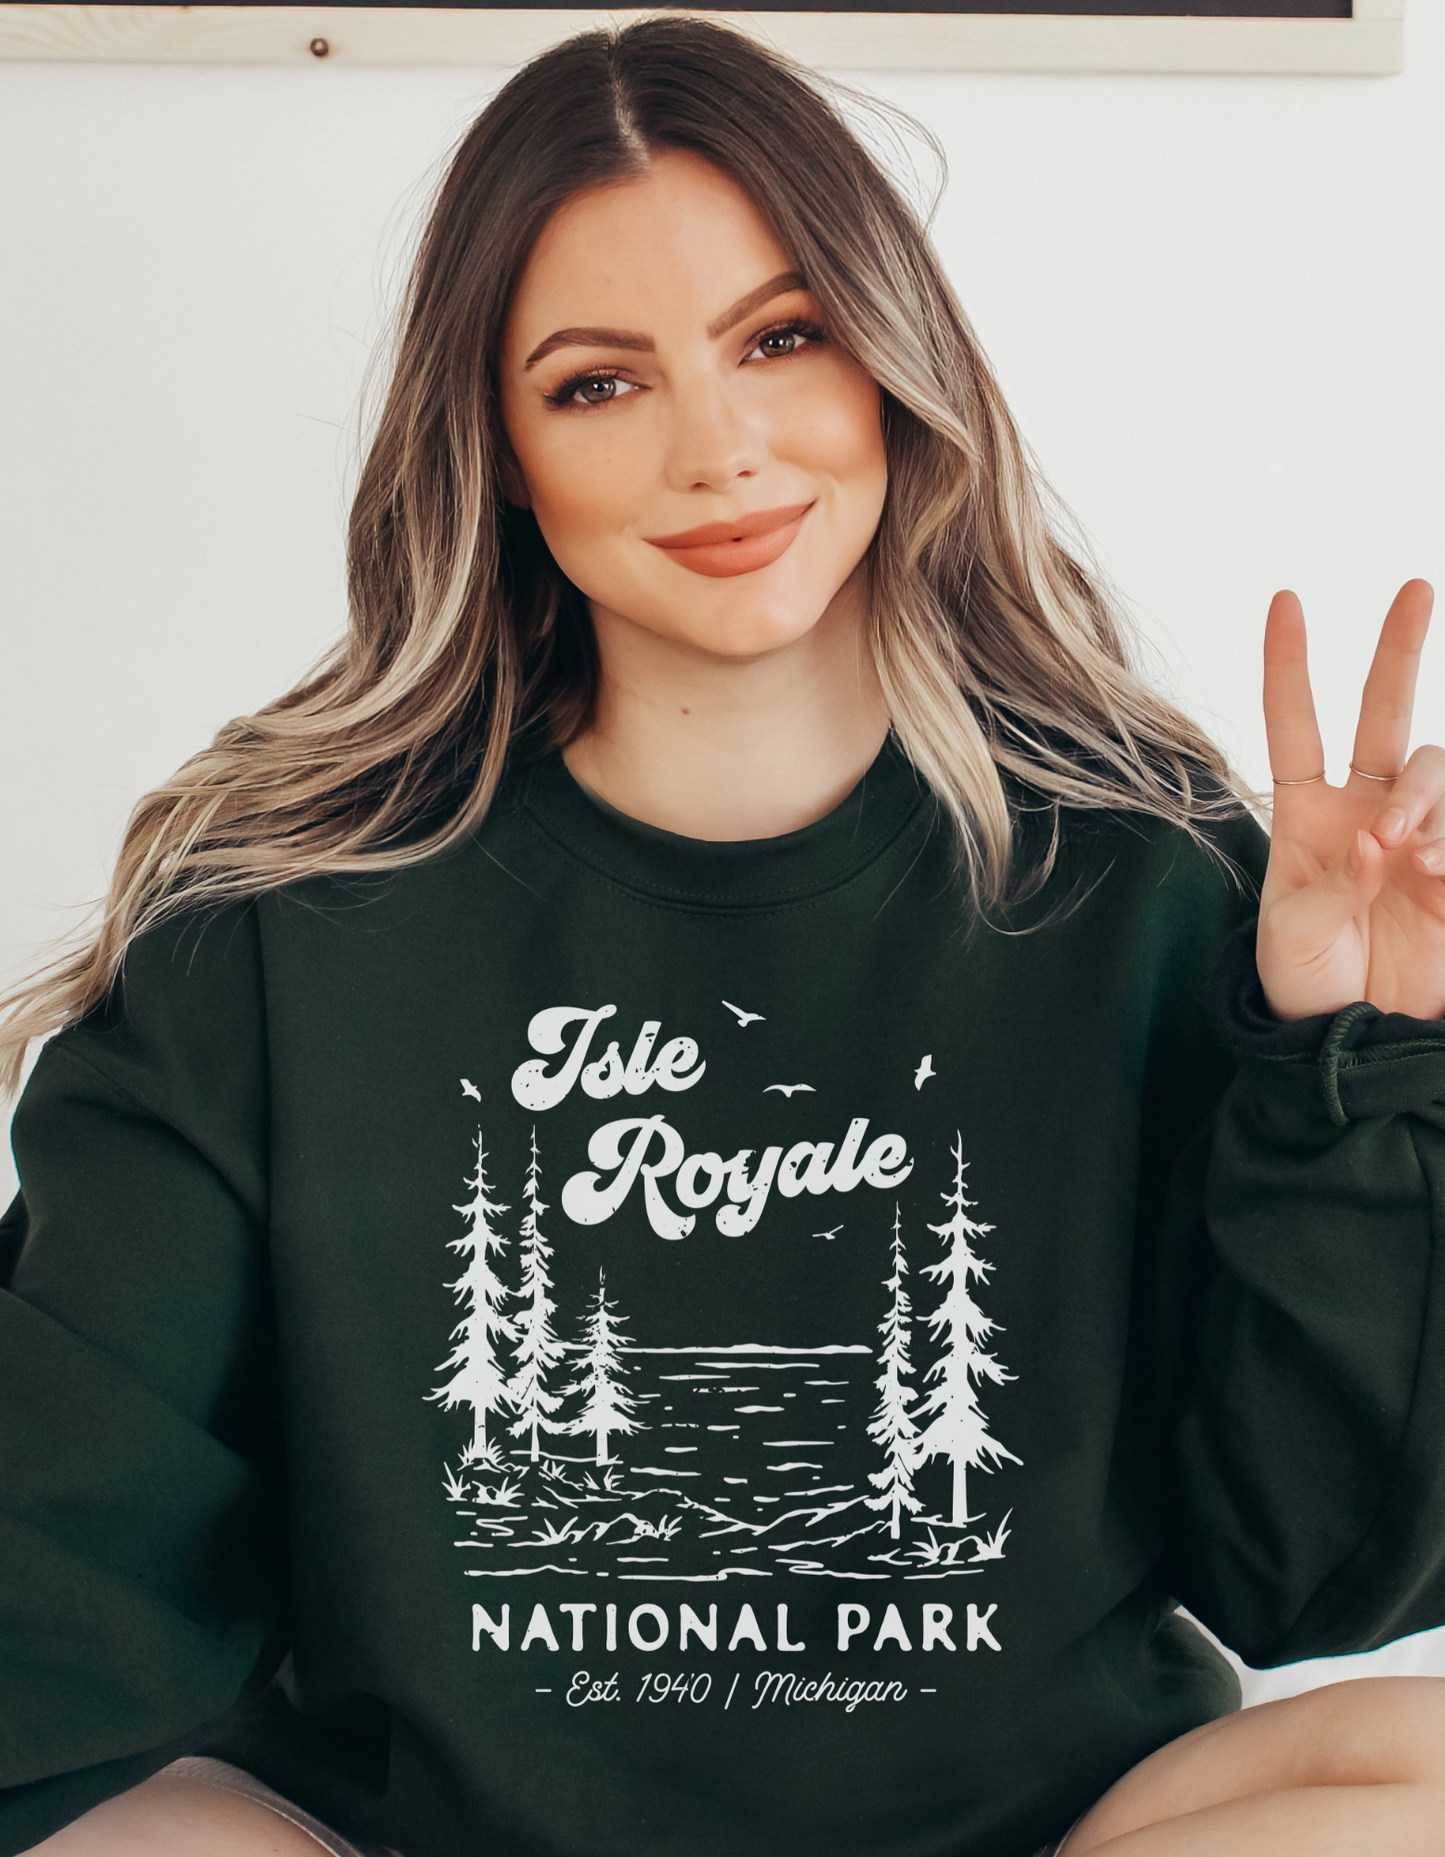 Isle Royale National Park Unisex Sweatshirt